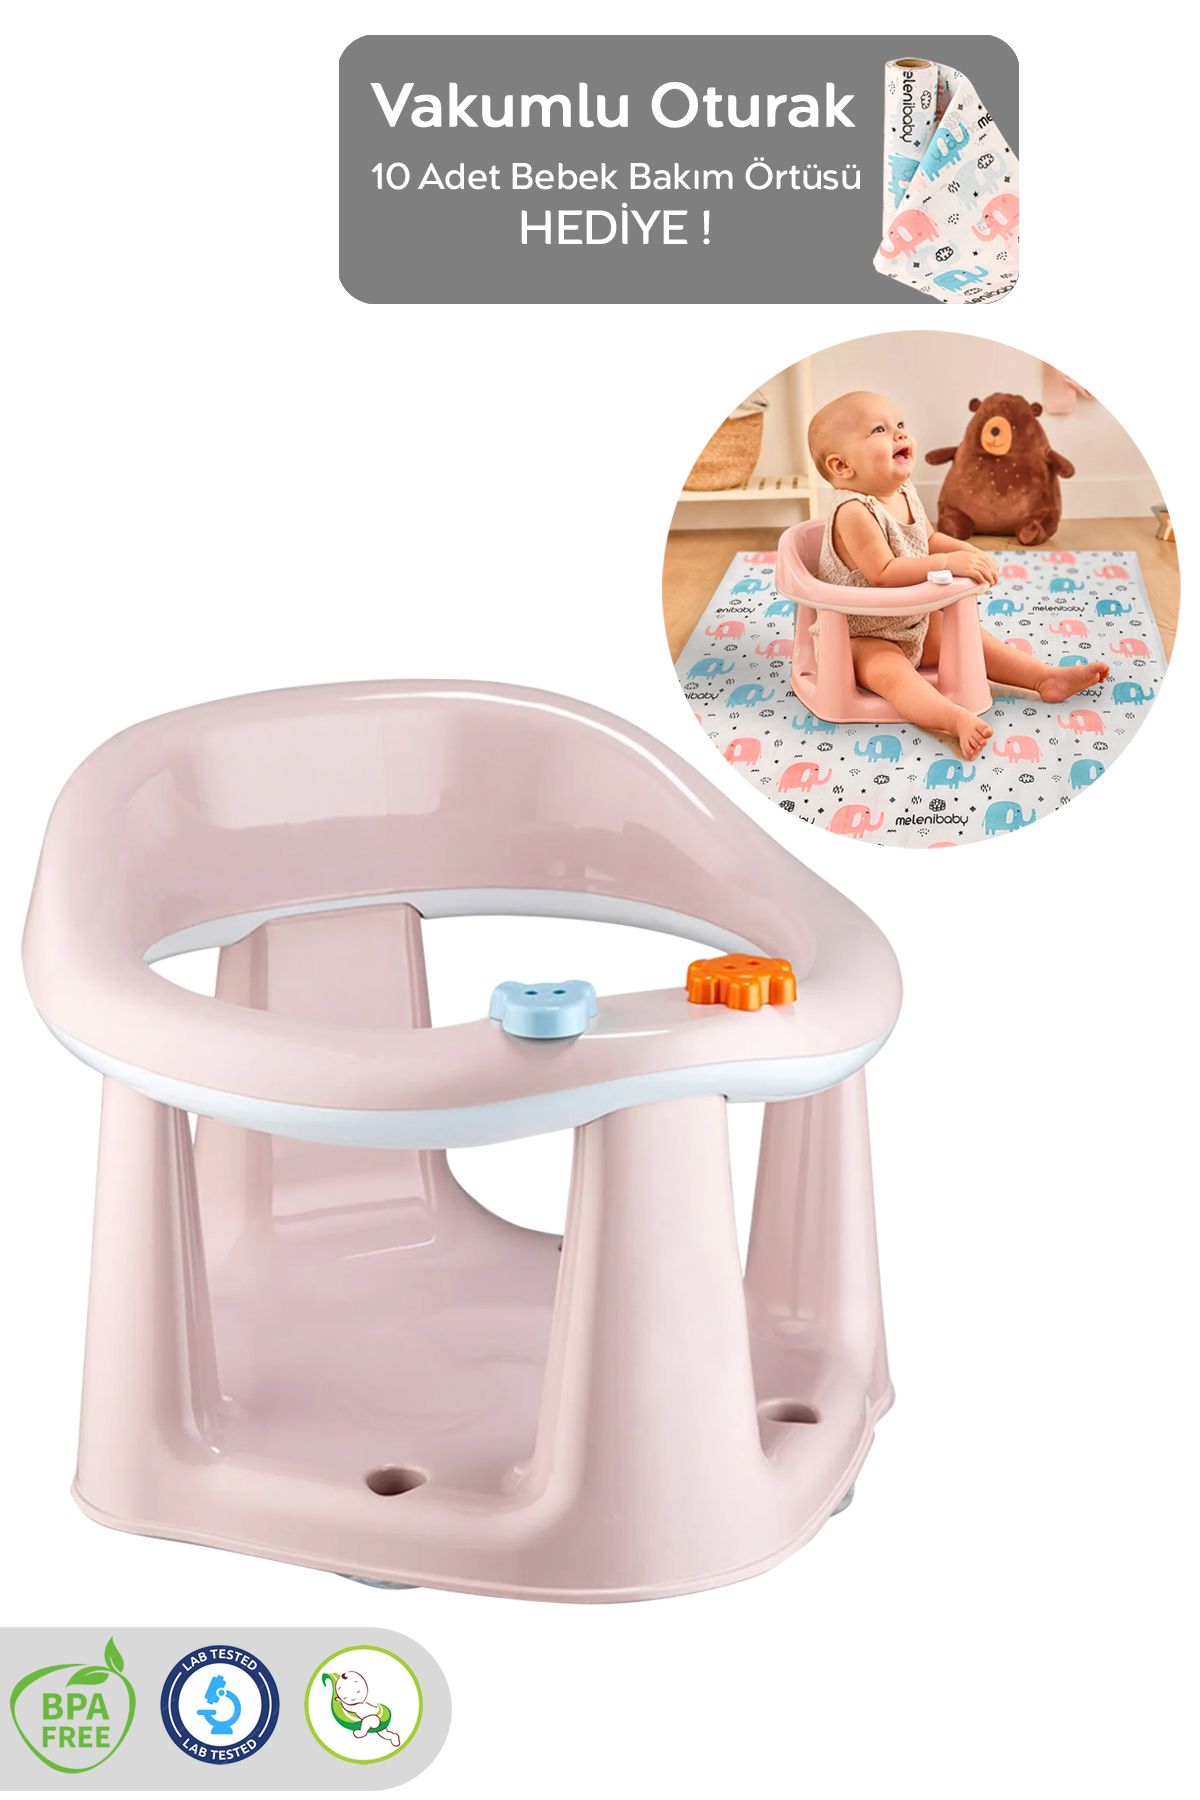 Meleni Baby Vakum Tabanlı Bebek Mama Sandalye Oturağı Oyuncaklı Banyo Oturağı Alt Açma Örtüsü Hediyeli Pembe